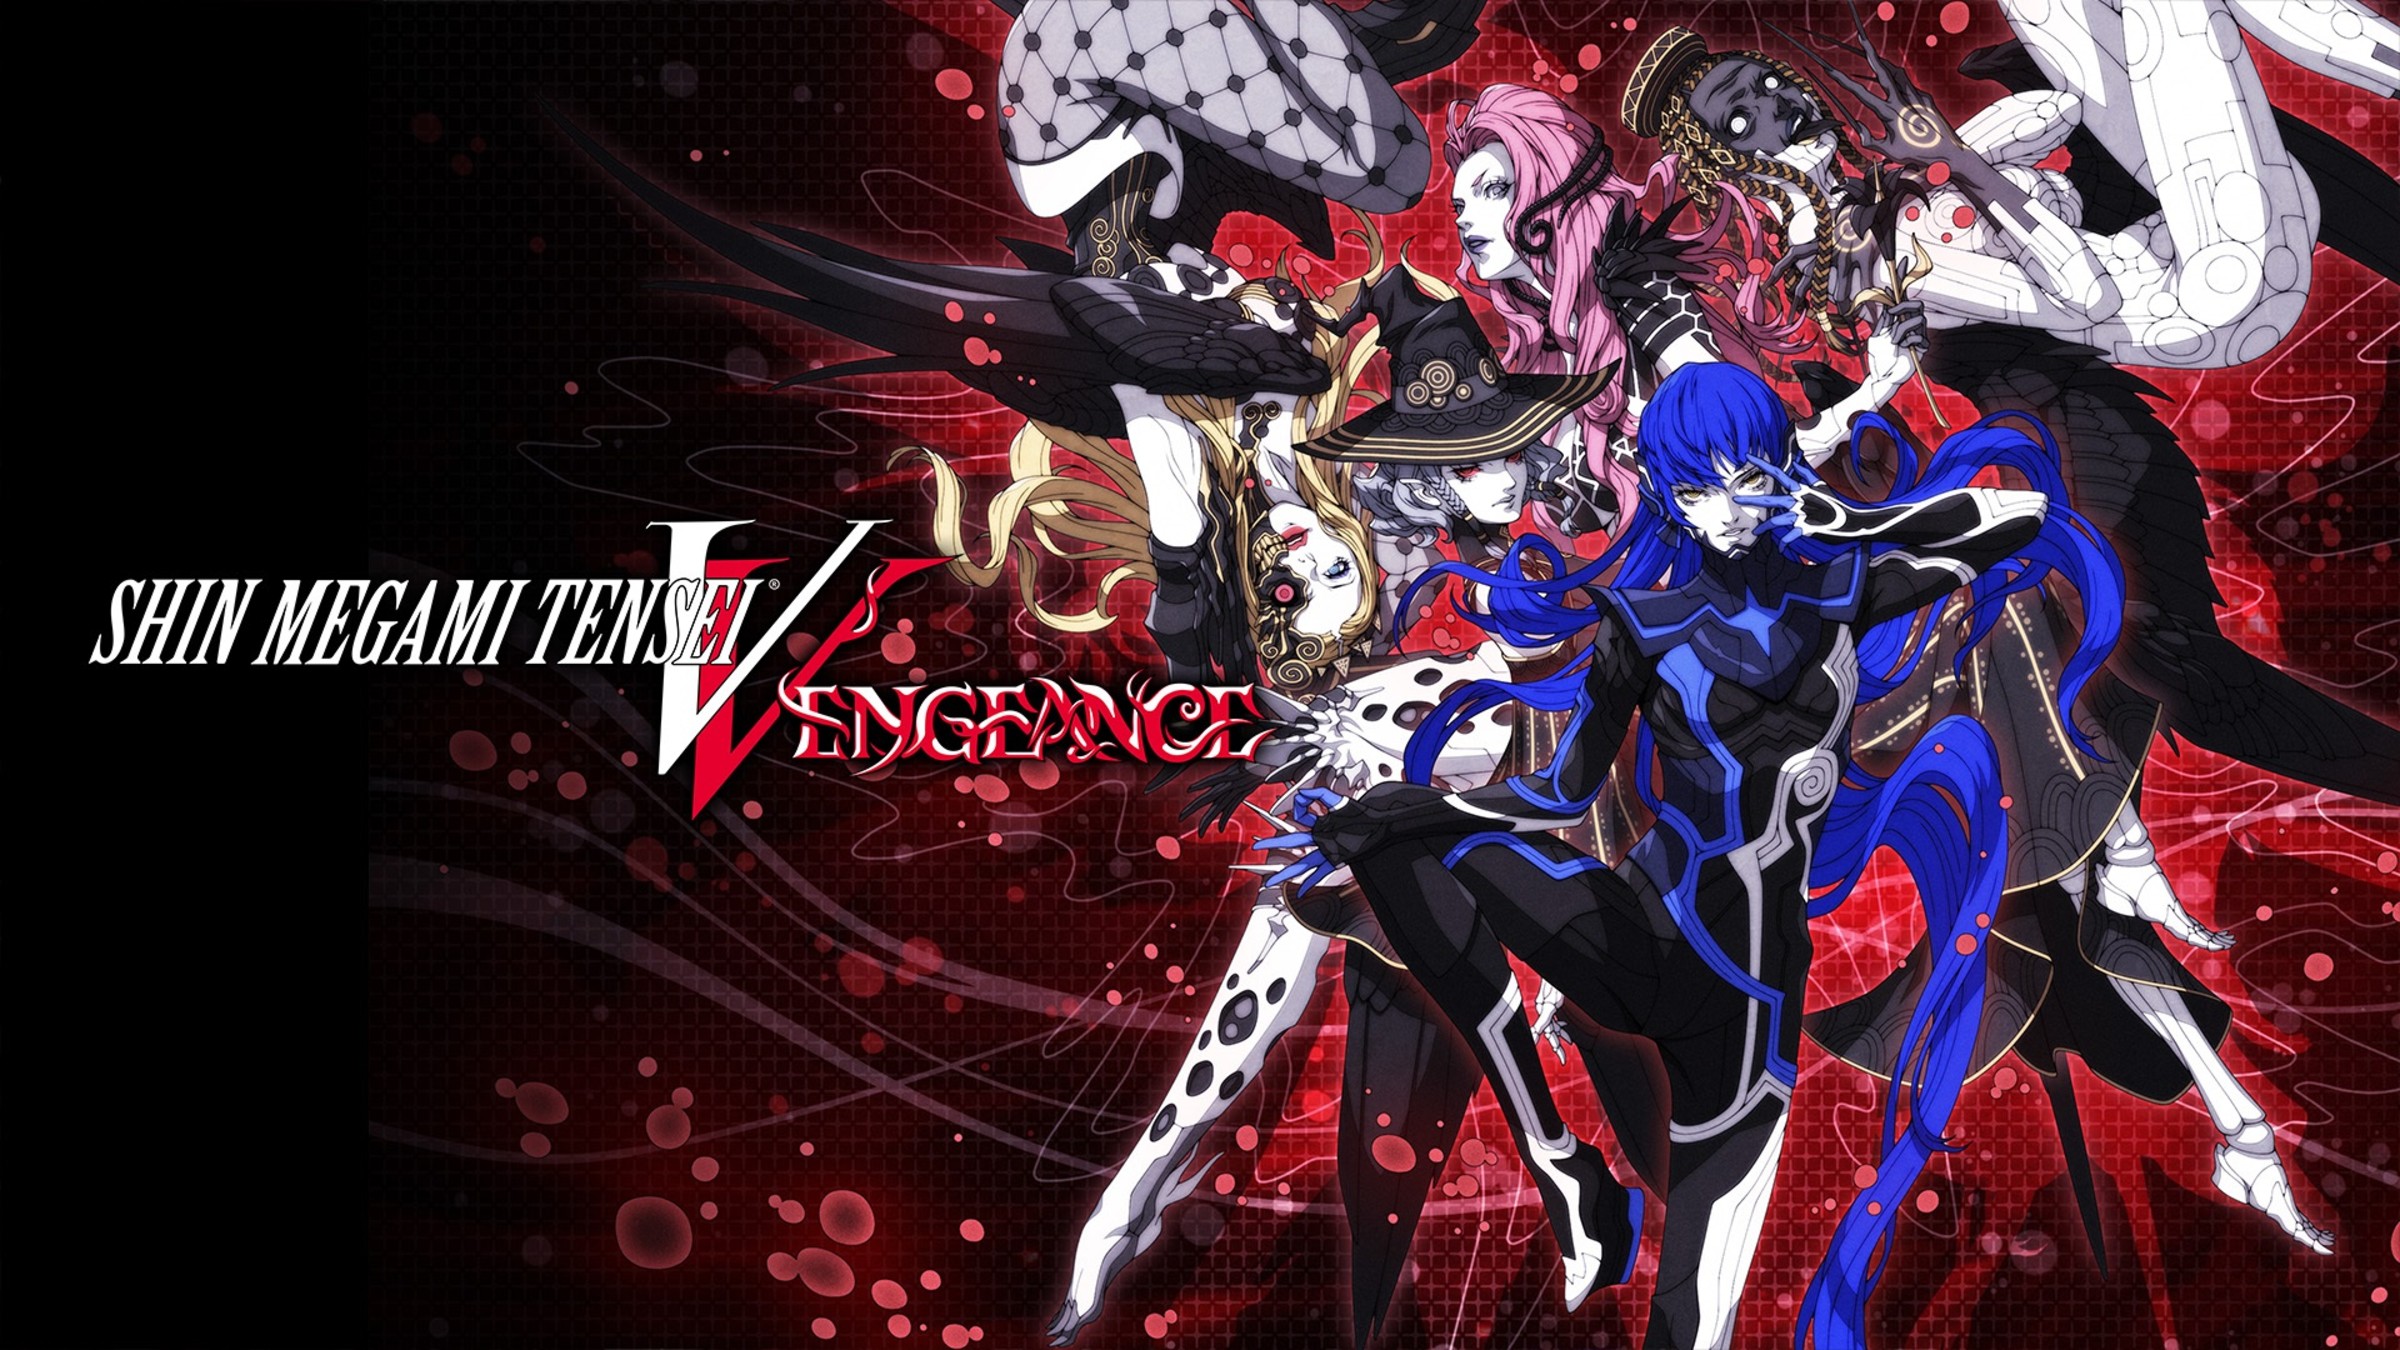 Shin Megami Tensei V: Vengeance for Nintendo Switch - Nintendo Official Site